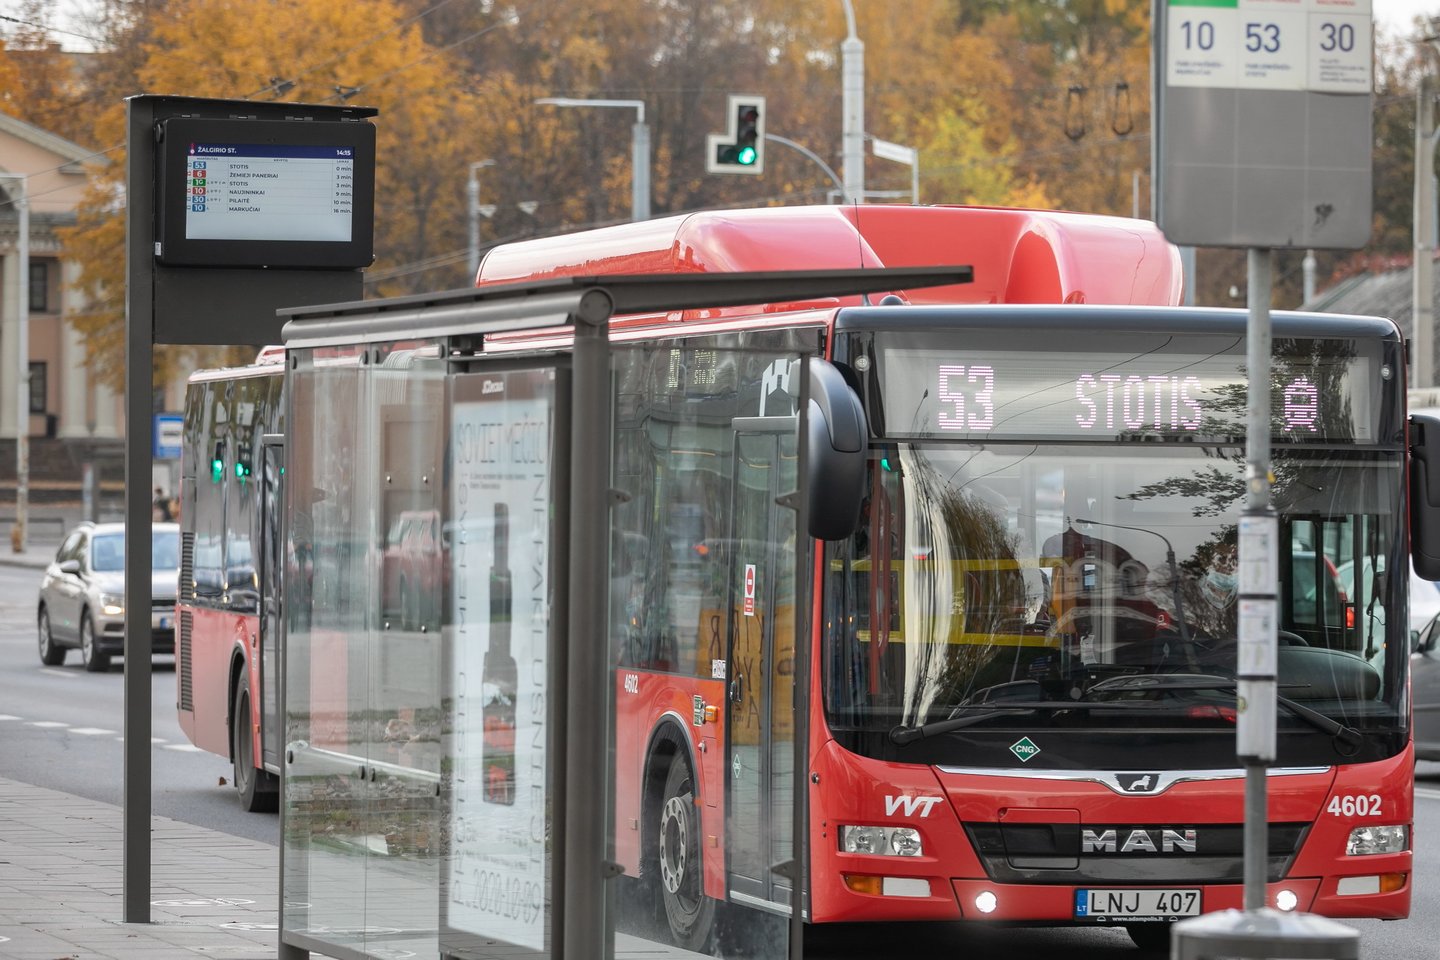 Nuo lapkričio 4 d. keičiami viešojo transporto tvarkaraščiai.<br>Pranešėjų spaudai nuotr.